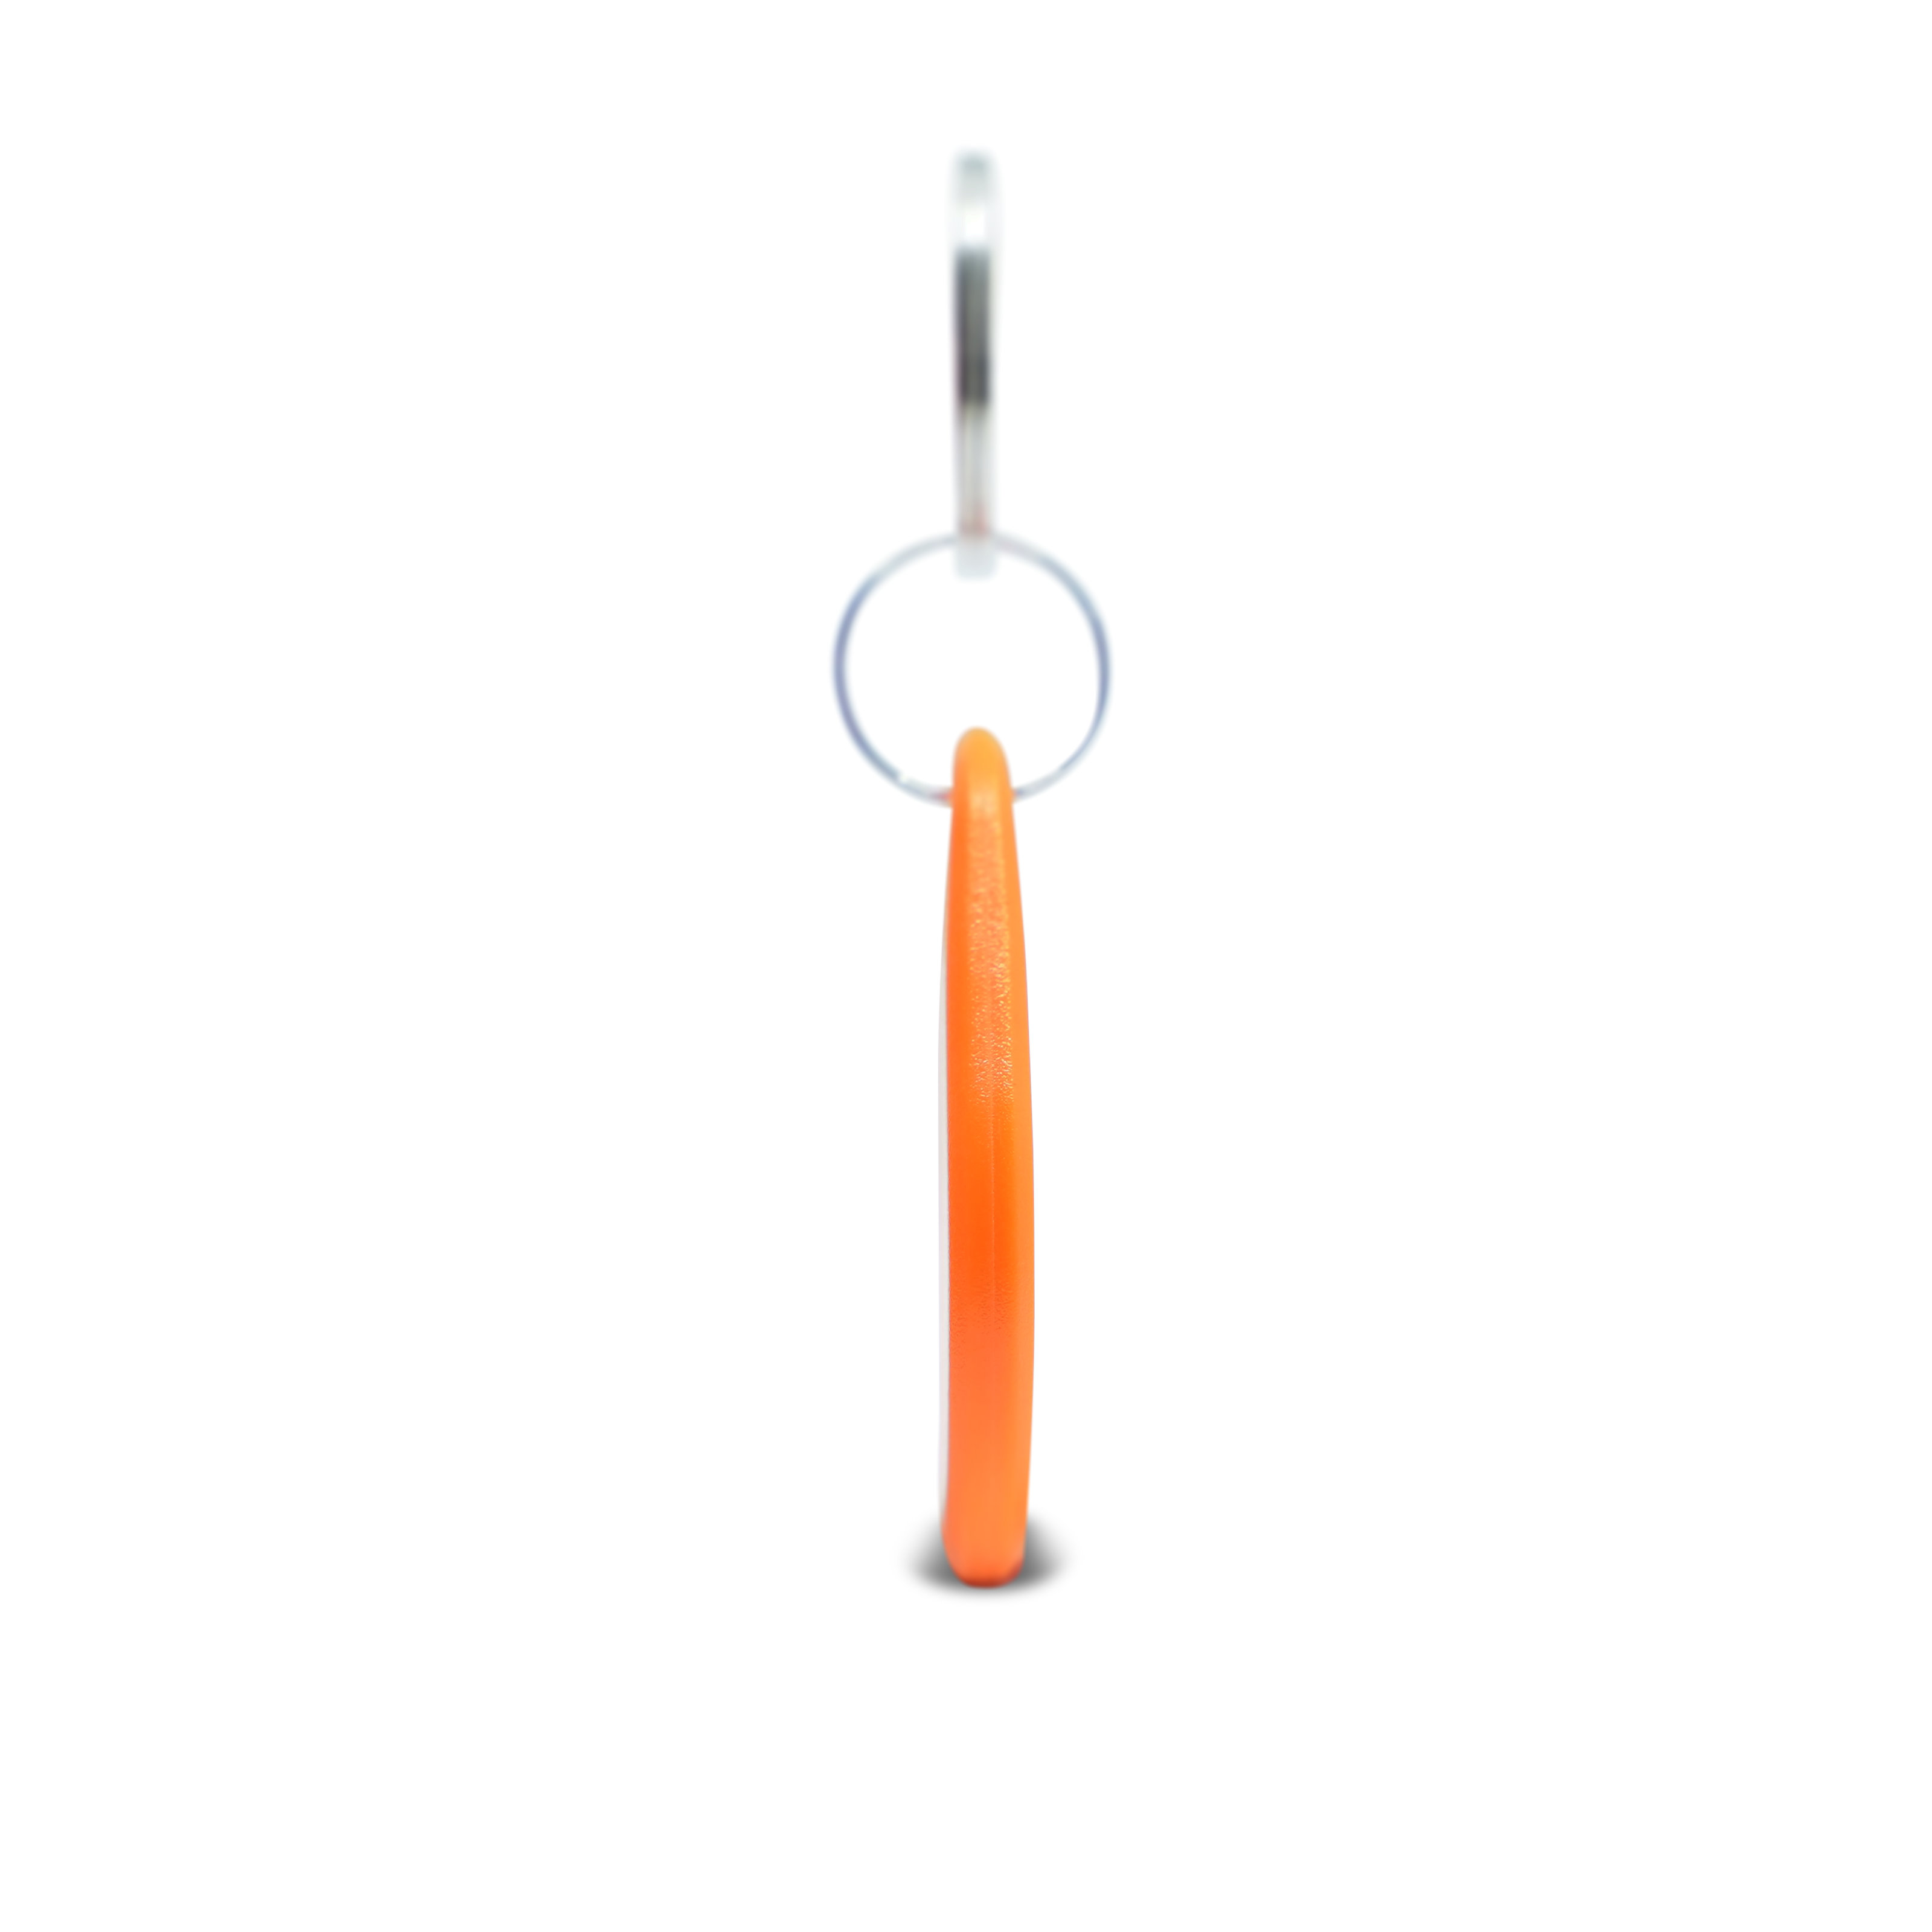 Seitenansicht des ABS Schlüsselanhängers in orange